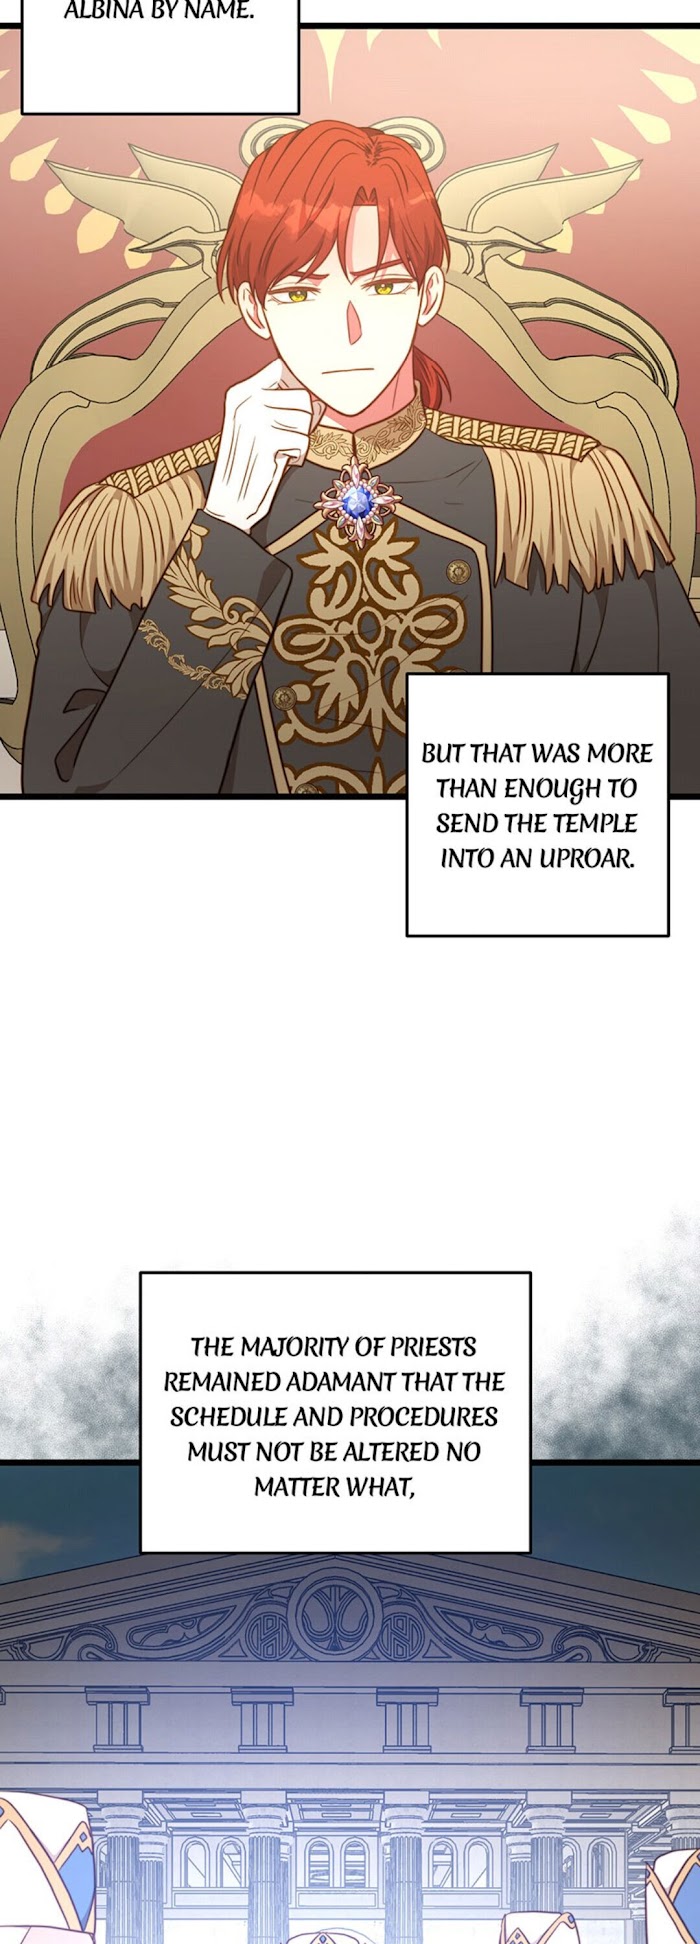 Irregular Empress - Page 2